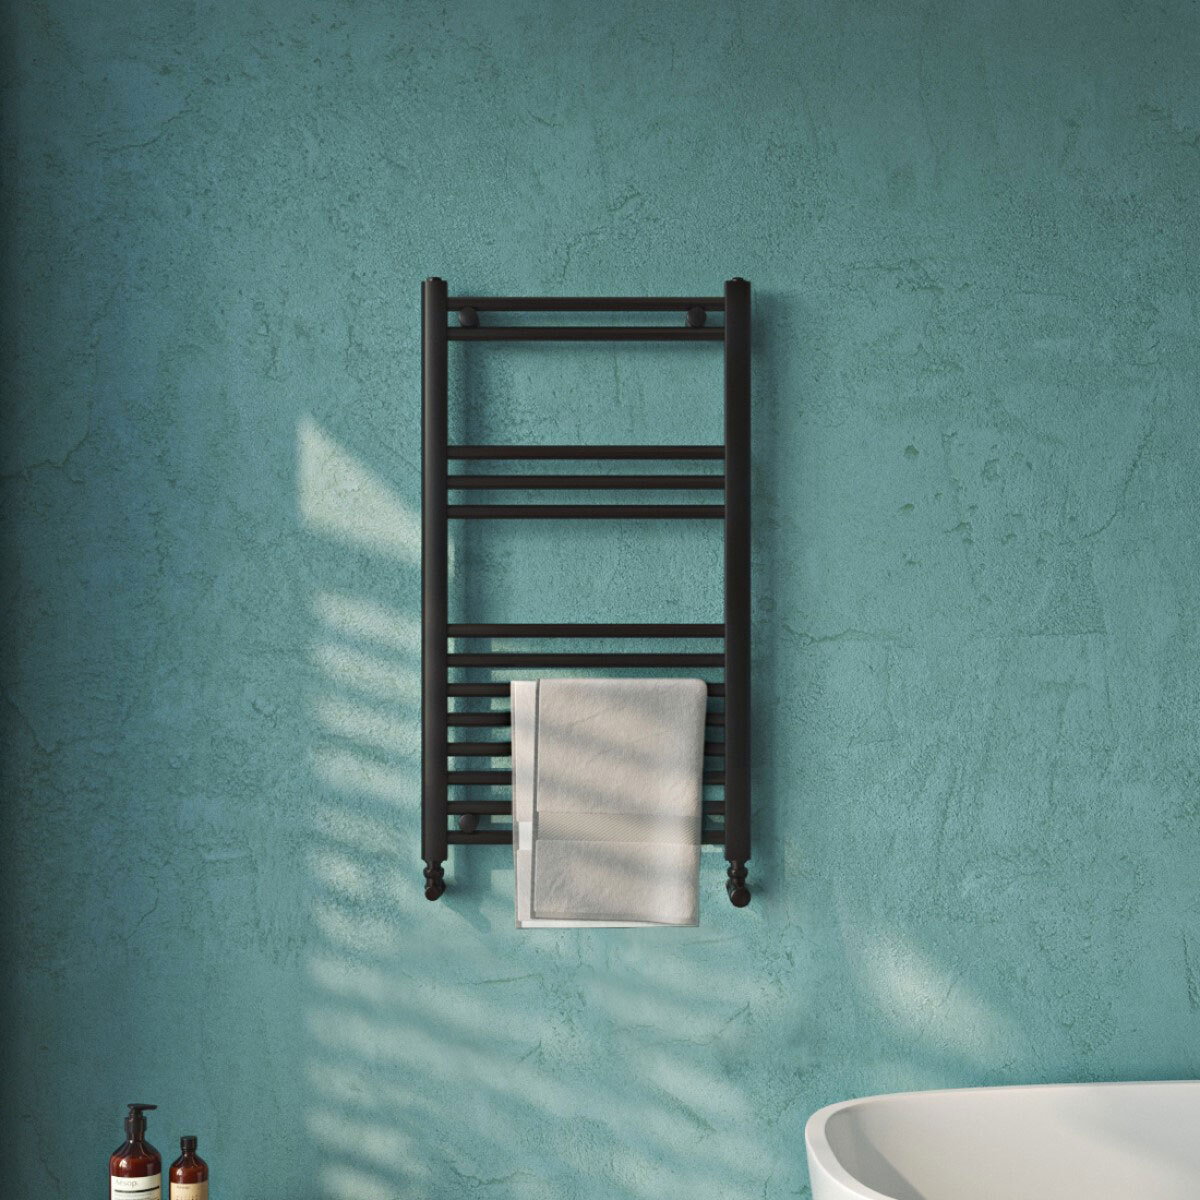 Lifestye image of radiator in bathroom setting